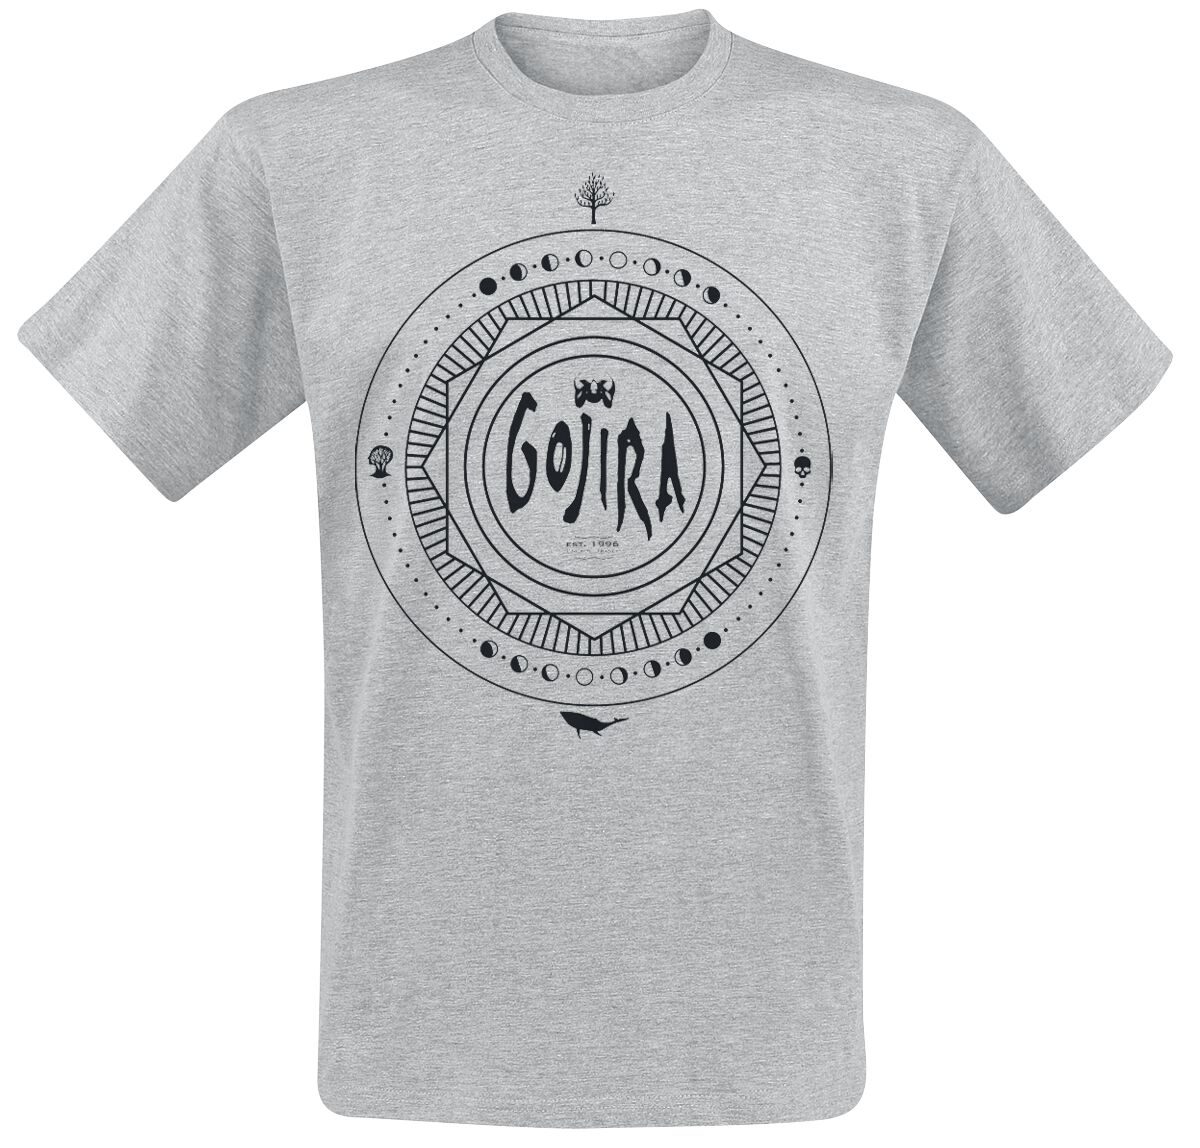 Gojira T-Shirt - Moon Phases - S bis XL - für Männer - Größe L - grau meliert  - Lizenziertes Merchandise!